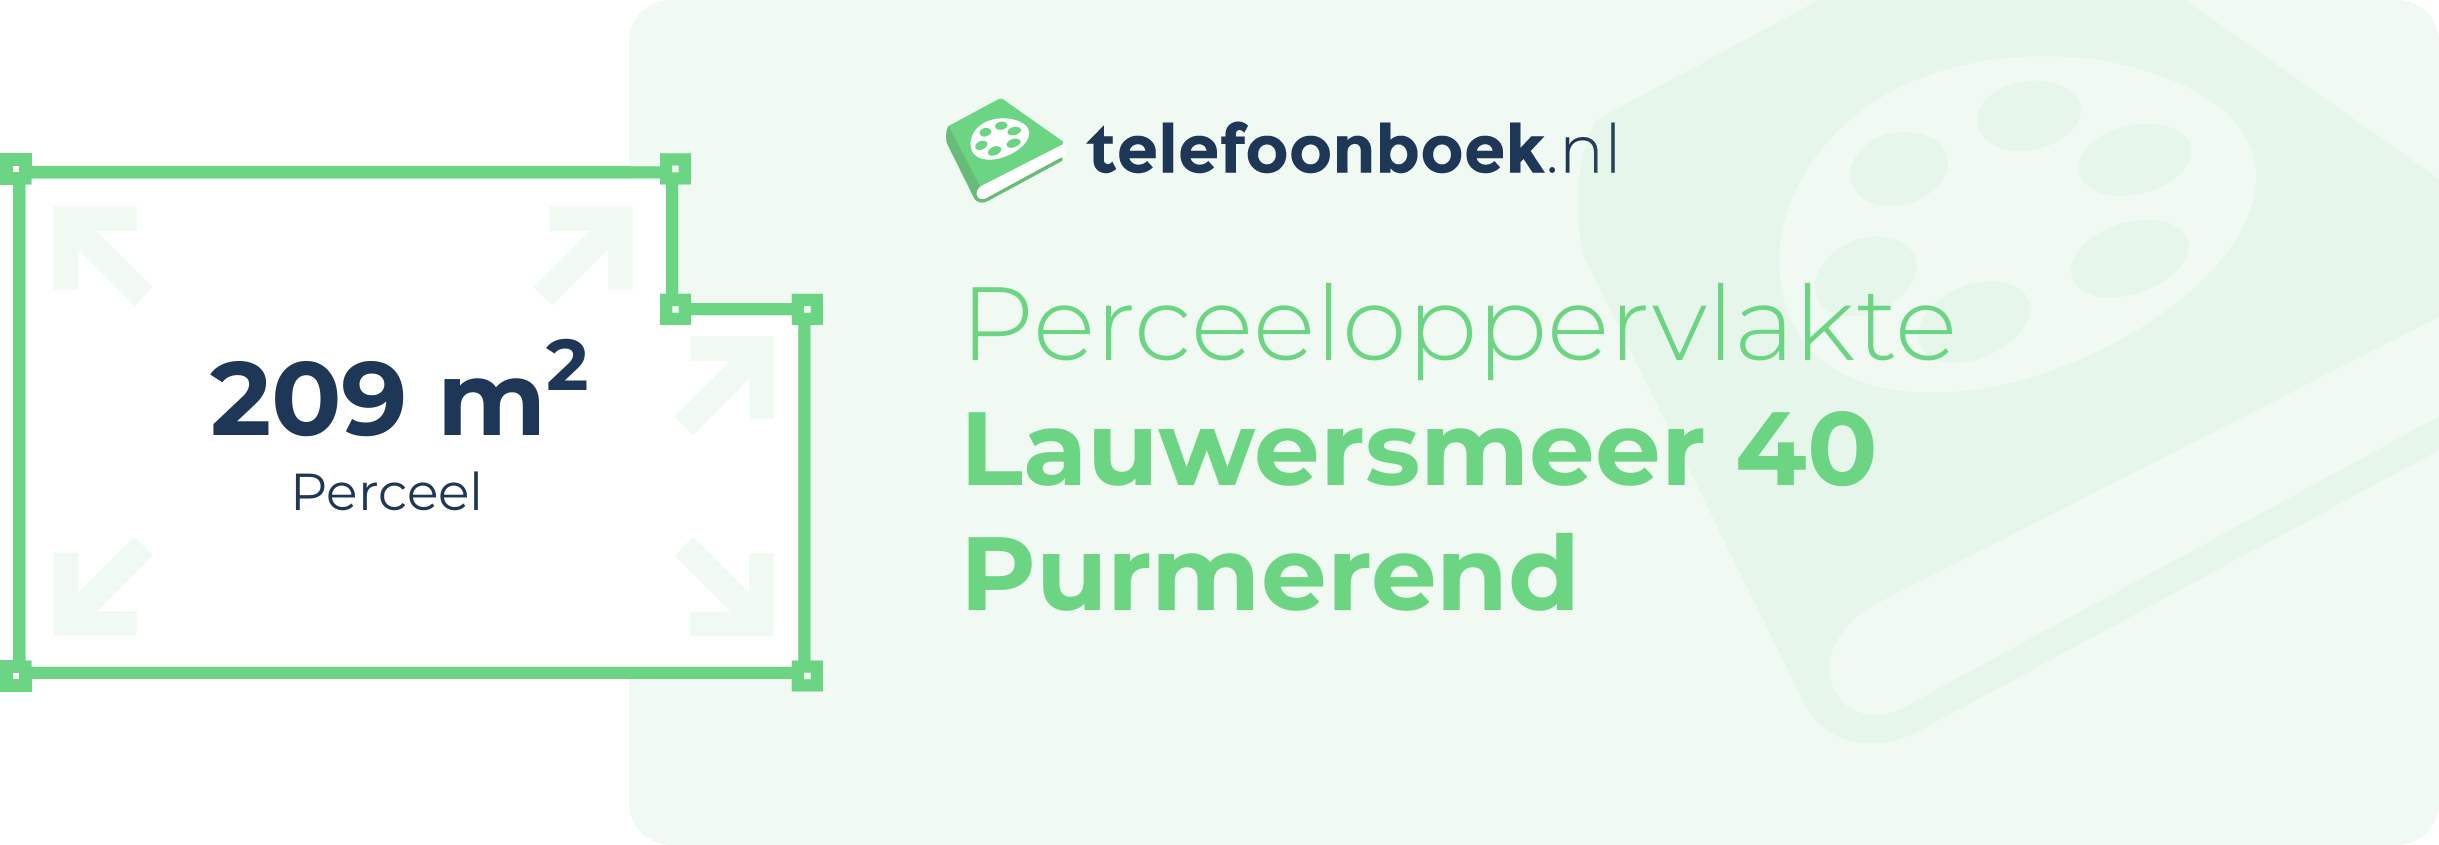 Perceeloppervlakte Lauwersmeer 40 Purmerend